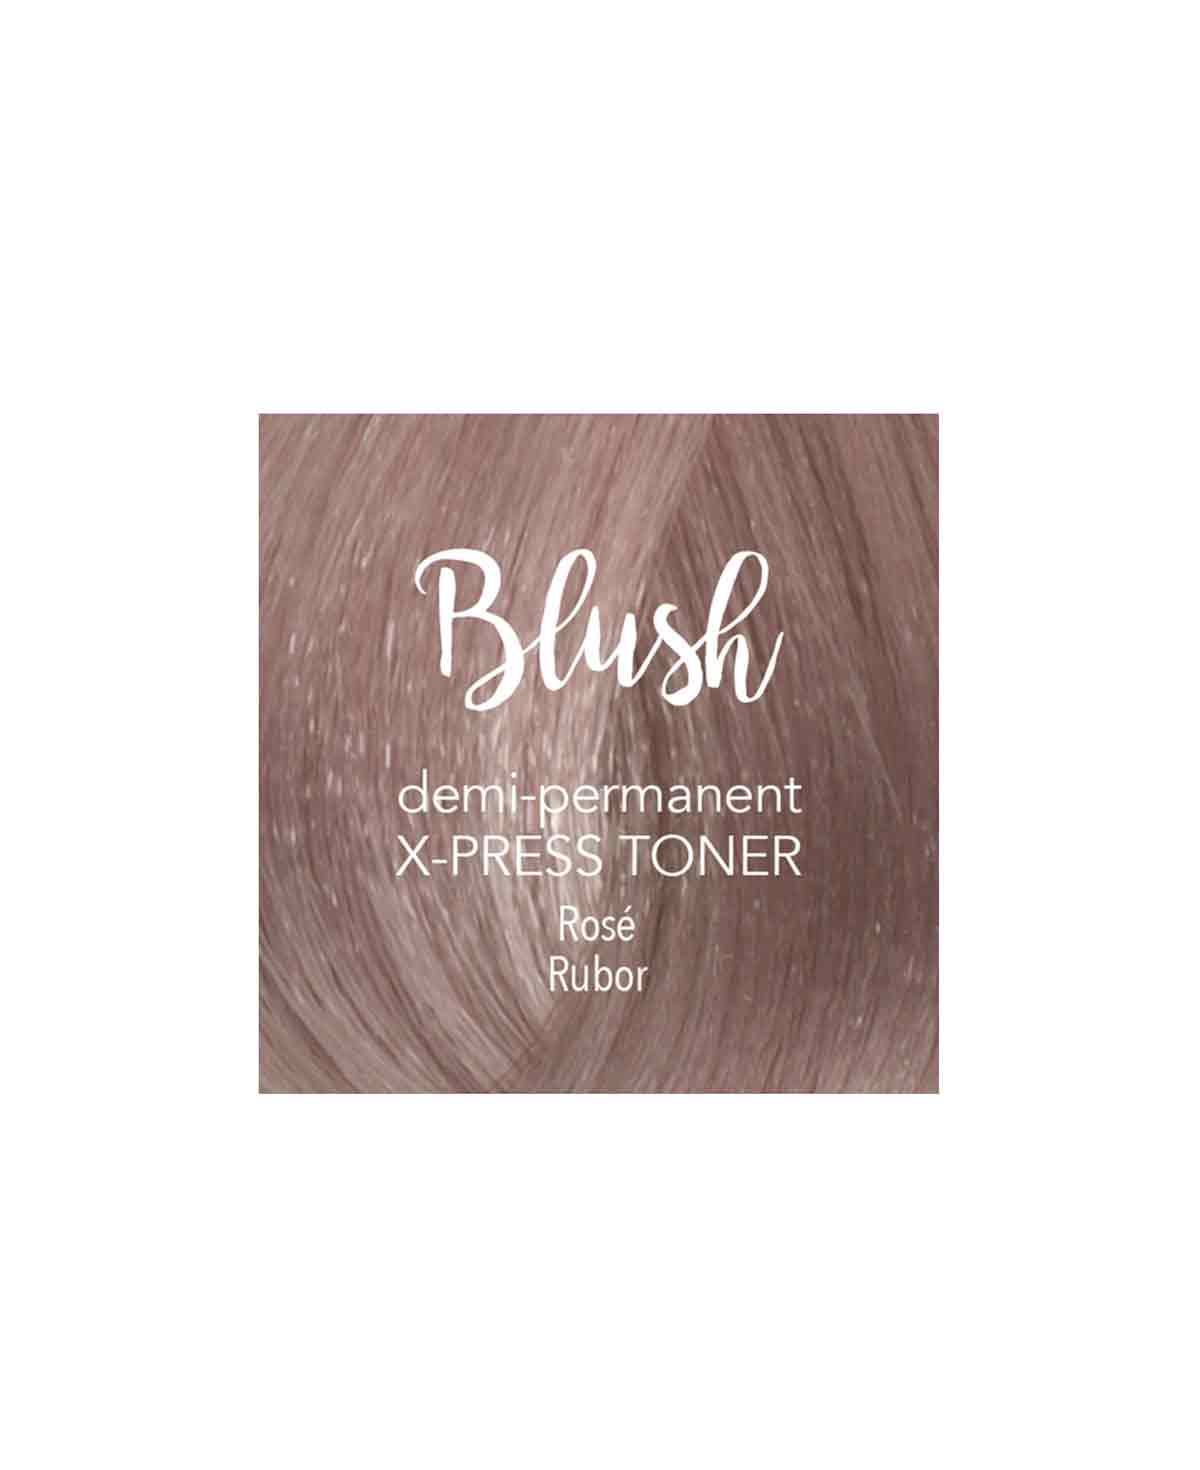 Mydentity X-Press Toner Blush 58g